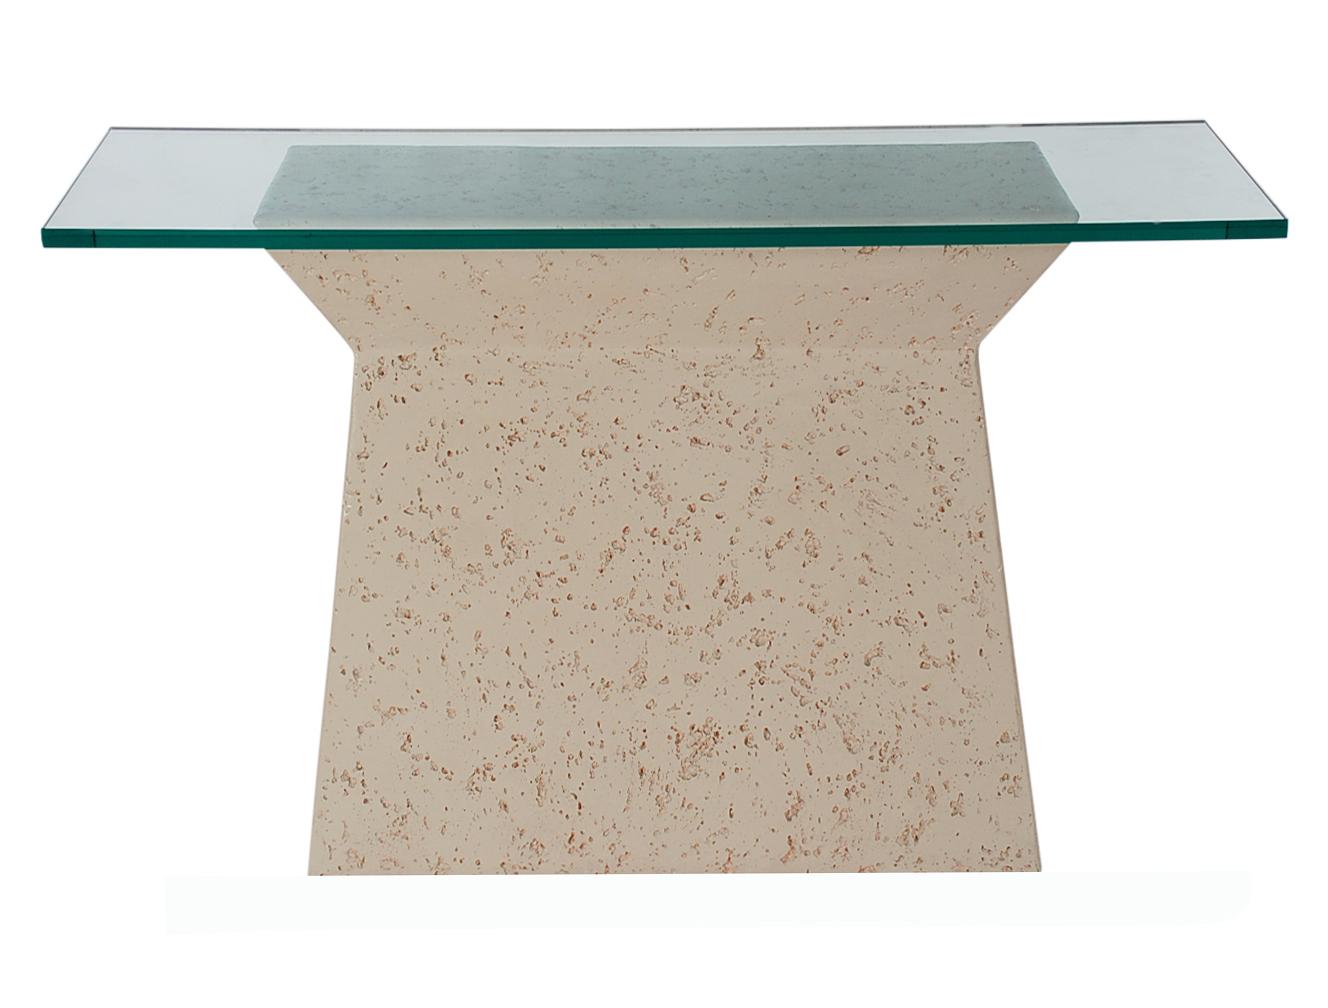 Une superbe table console de forme moderne dans le style de Sirmos. Cette table présente une base en résine texturée blanc cassé et un plateau en verre très épais. Très propre et bien entretenu.